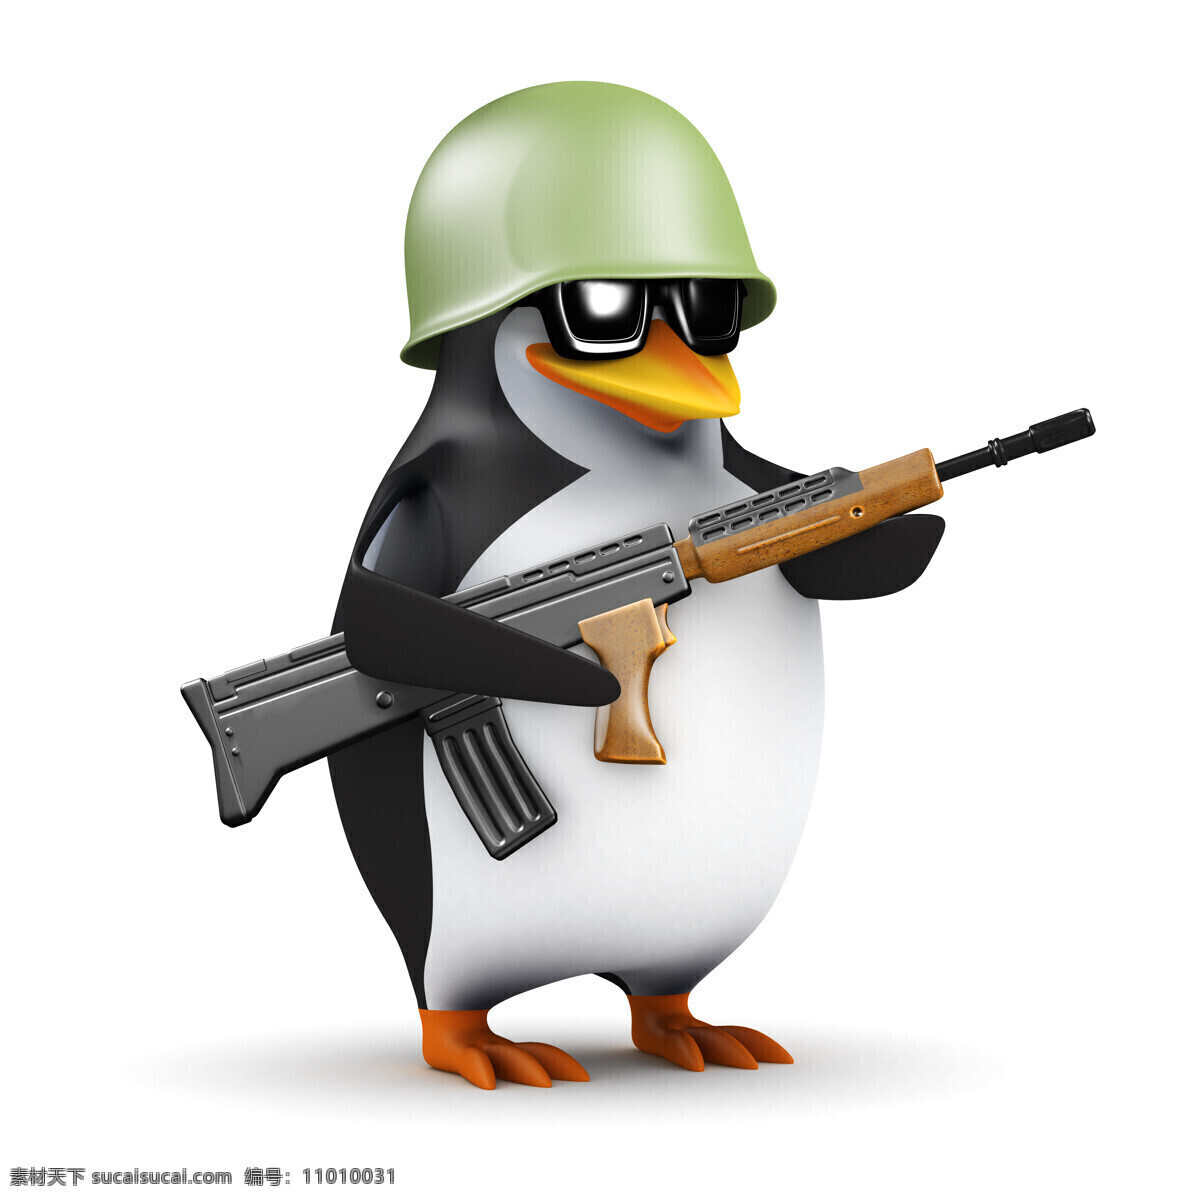 枪 的卡 通 企鹅 有趣的企鹅 卡通形象 卡通素材 pinguin 高清图片 卡通动物 生物世界